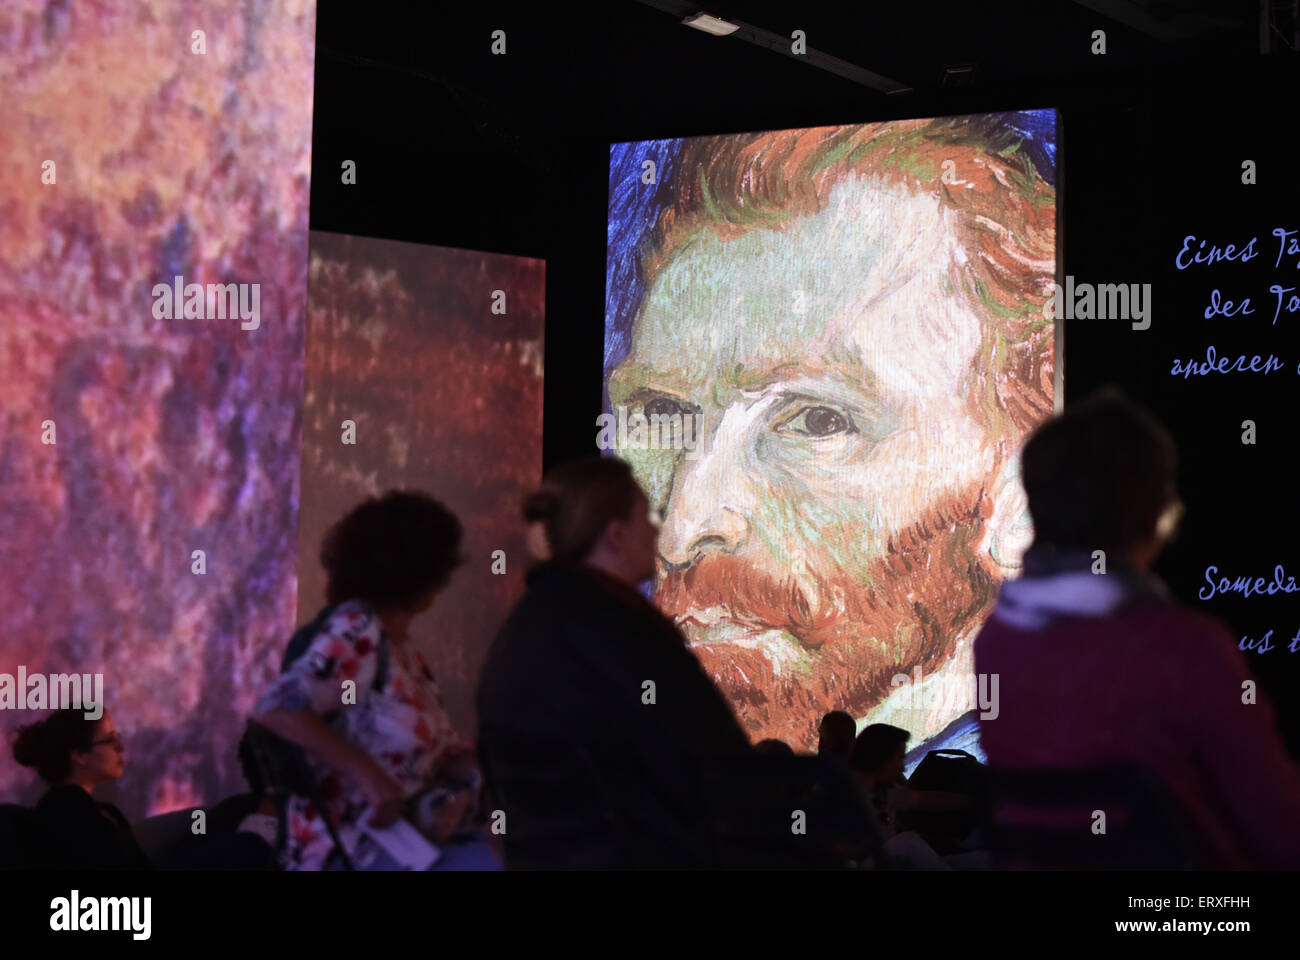 Un regard sur l'exposition 'Van Gogh' vivant à Berlin, Allemagne, 014 Juin 2015. Les œuvres de Vincent van Gogh sont affichées à l'aide de projecteurs, des graphiques animés et surround-sound-systems. L'exposition à l'occasion du 125e anniversaire de la mort de Van Gogh se déroule du 21 mai au 01 novembre 2015 à Berlin. Photo : JENS KALAENE/dpa Banque D'Images